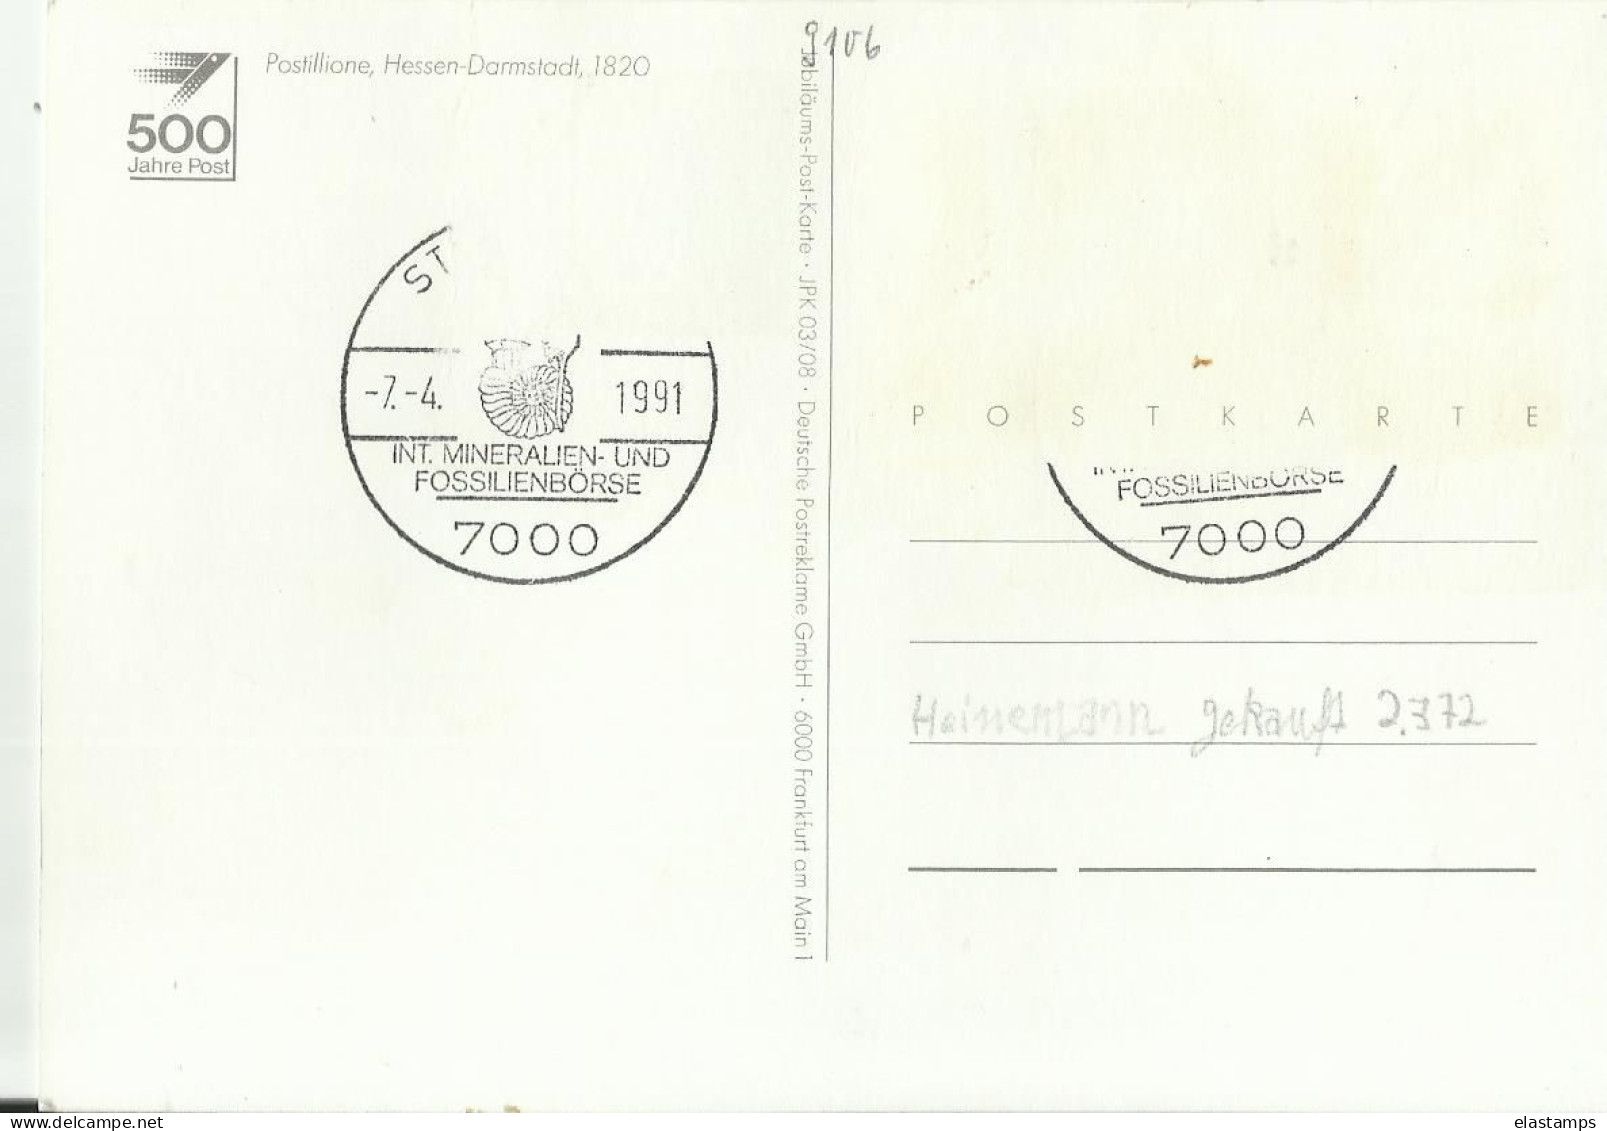 AK DE POST - Postal Services